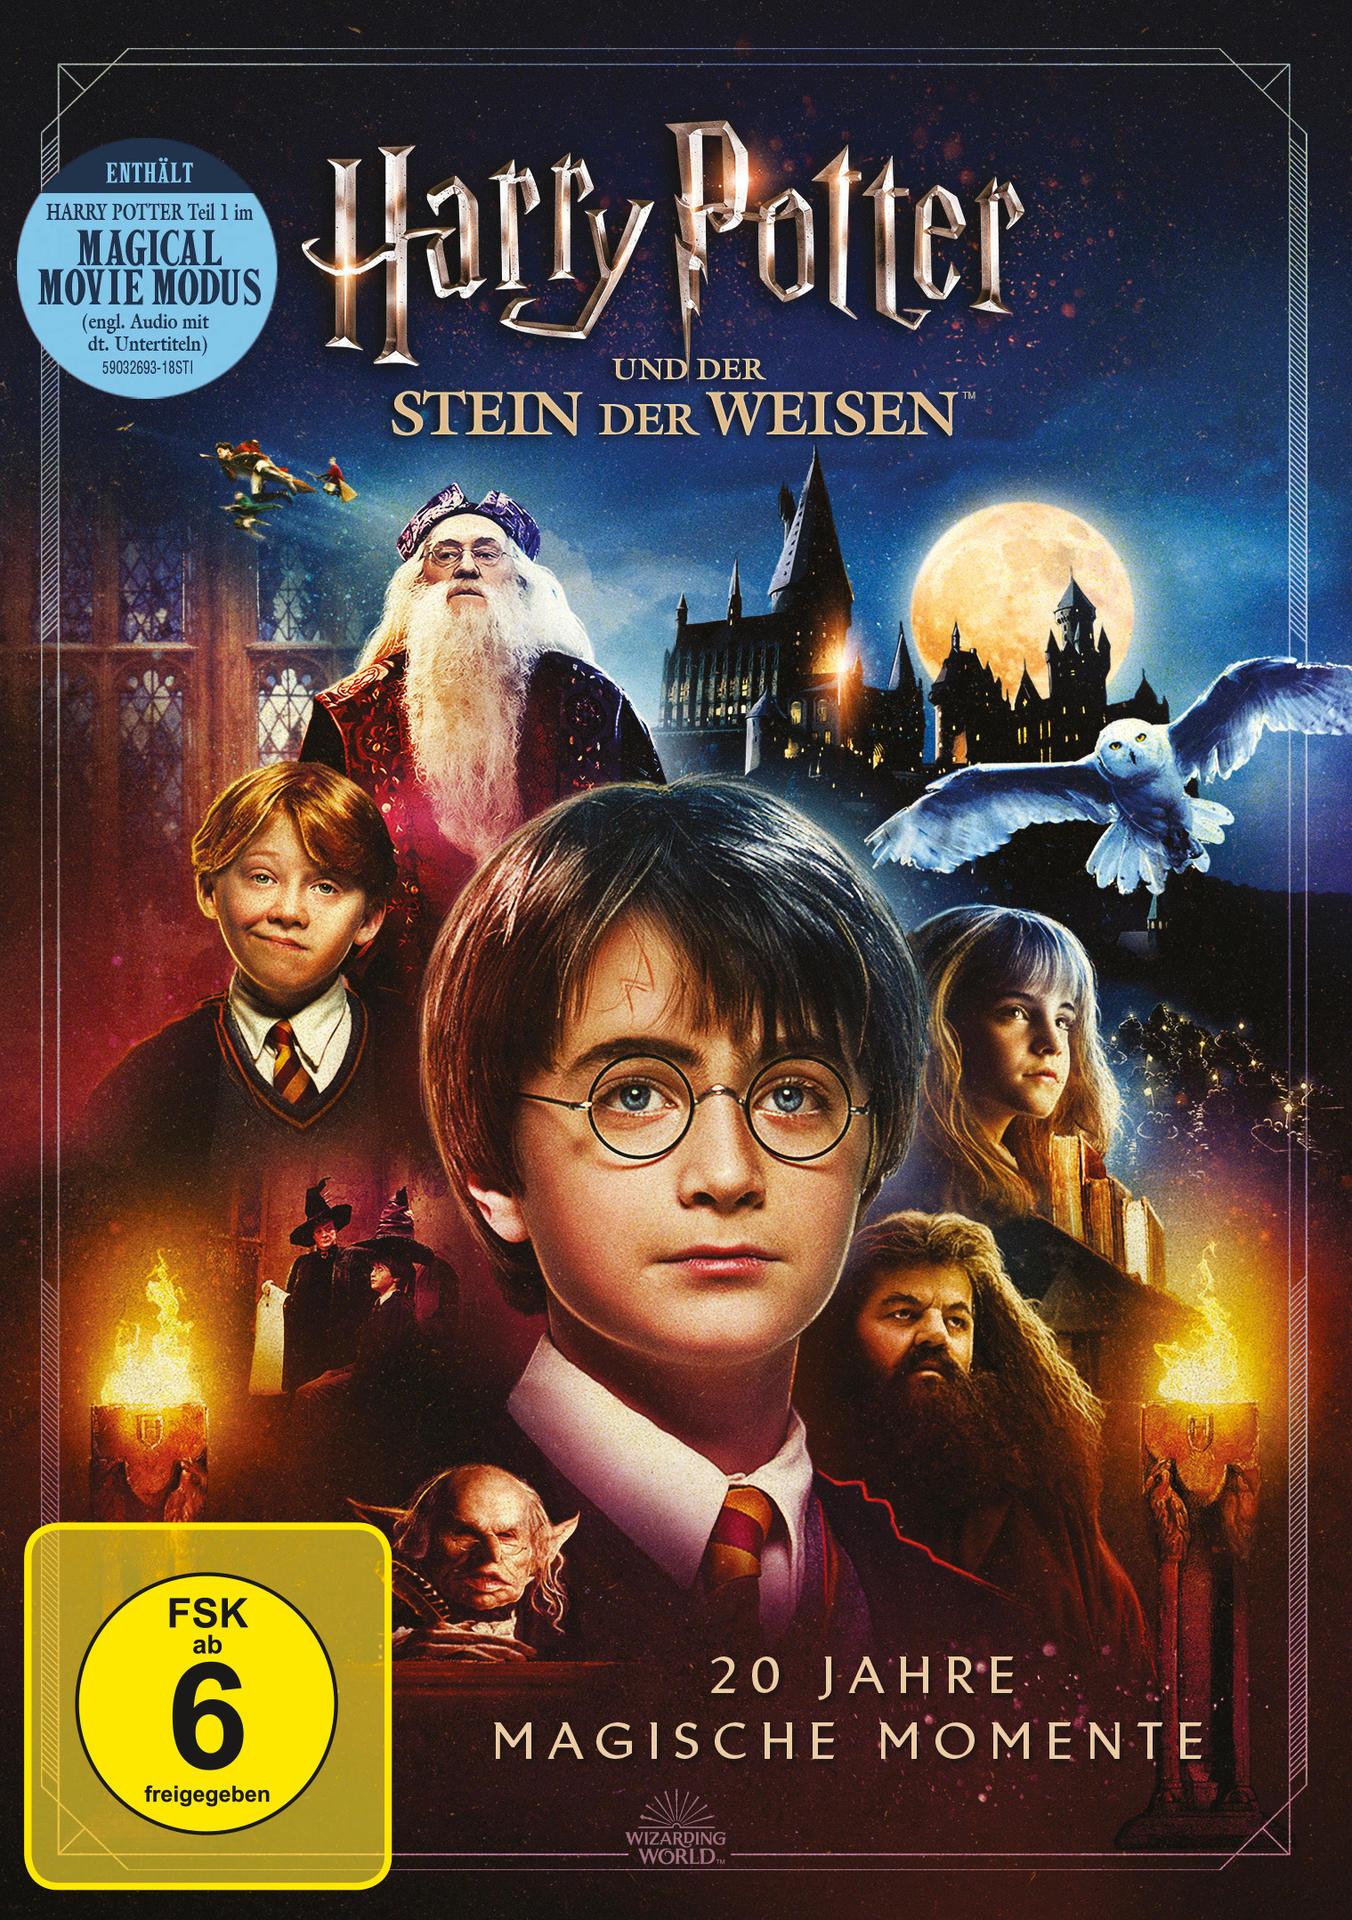 Harry Potter Weisen der Stein DVD der und